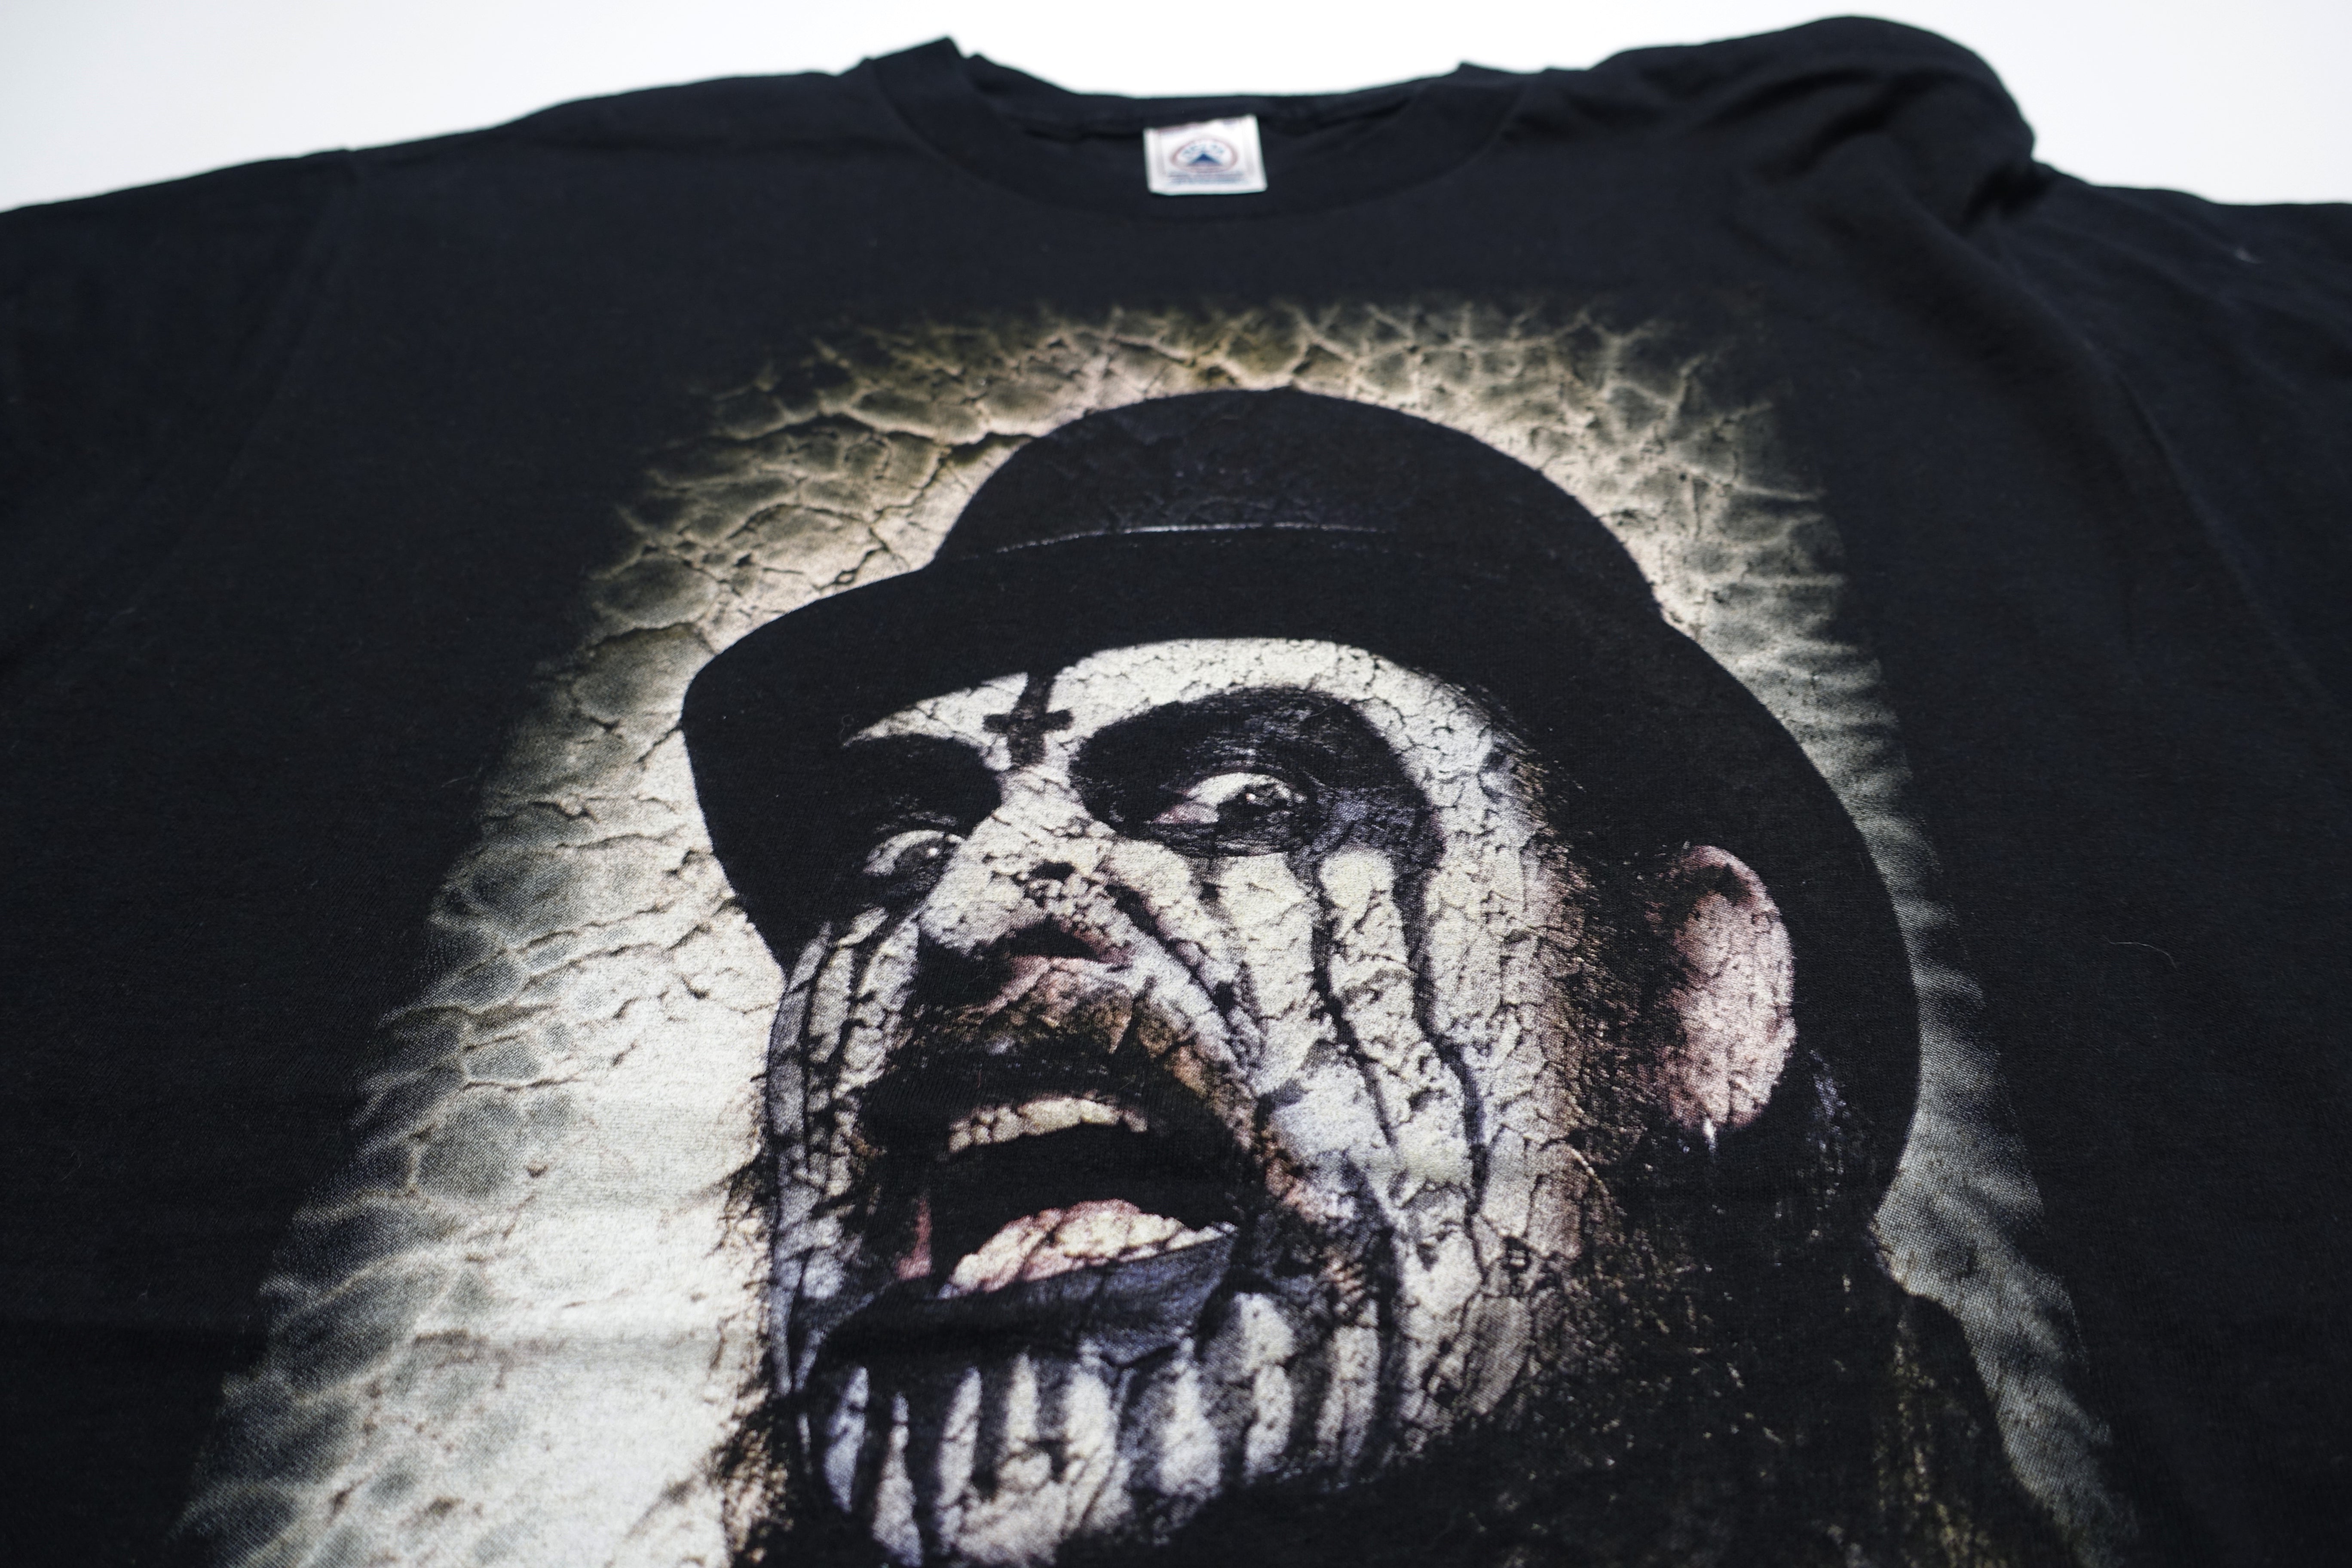 Mercyful Fate – King Diamond Cross Tour Shirt Size Large